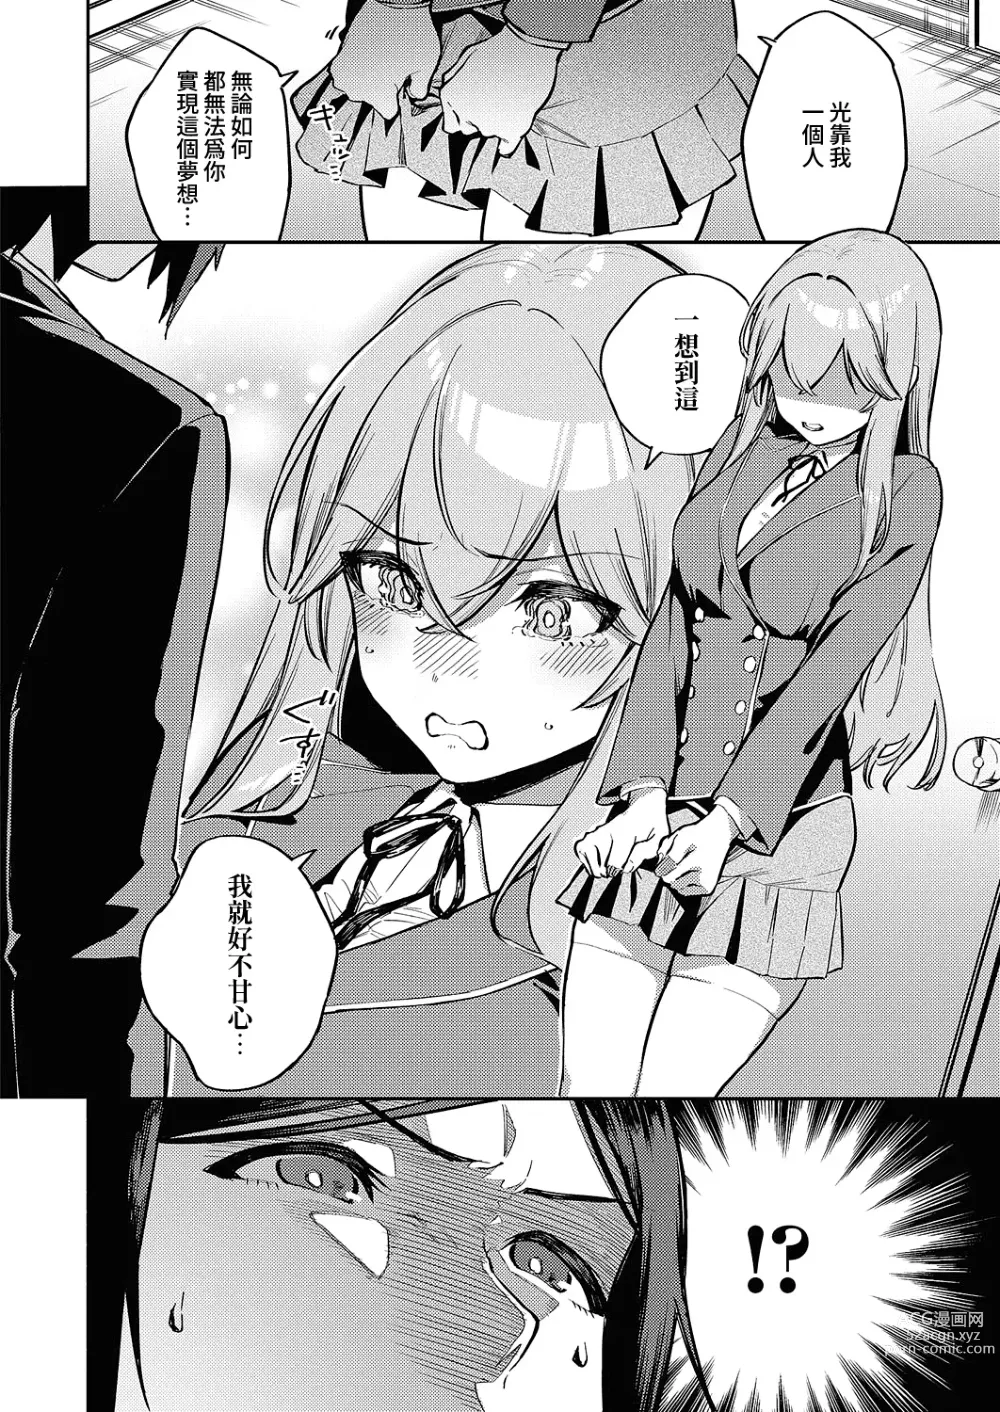 Page 4 of manga 風紀危害RE